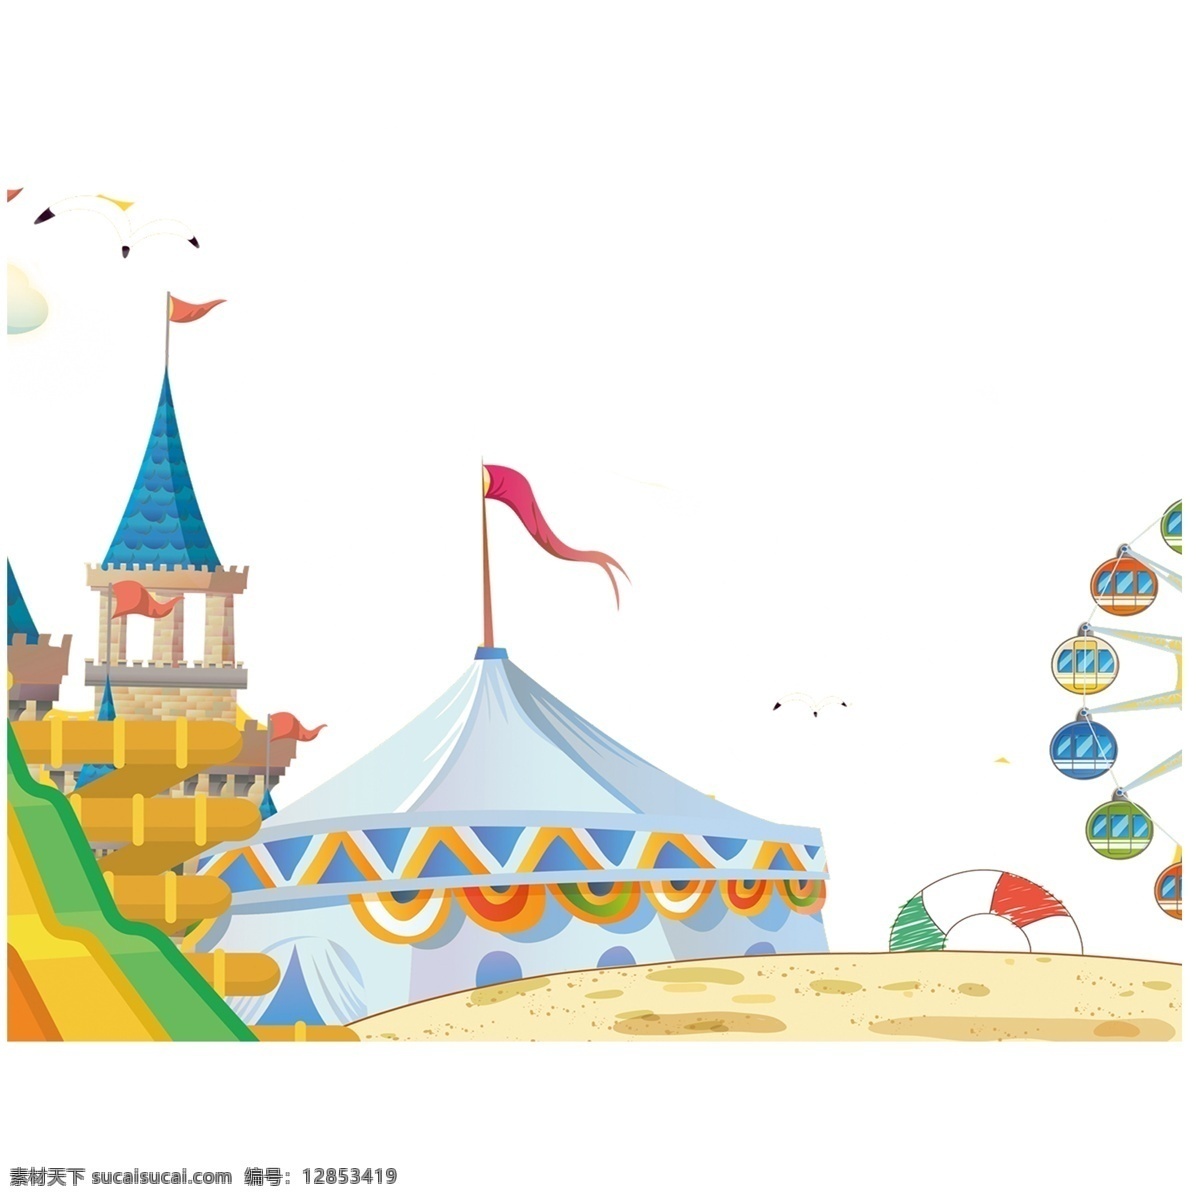 卡通 游乐场 城堡 摩天轮 帐篷 海鸥 装饰素材